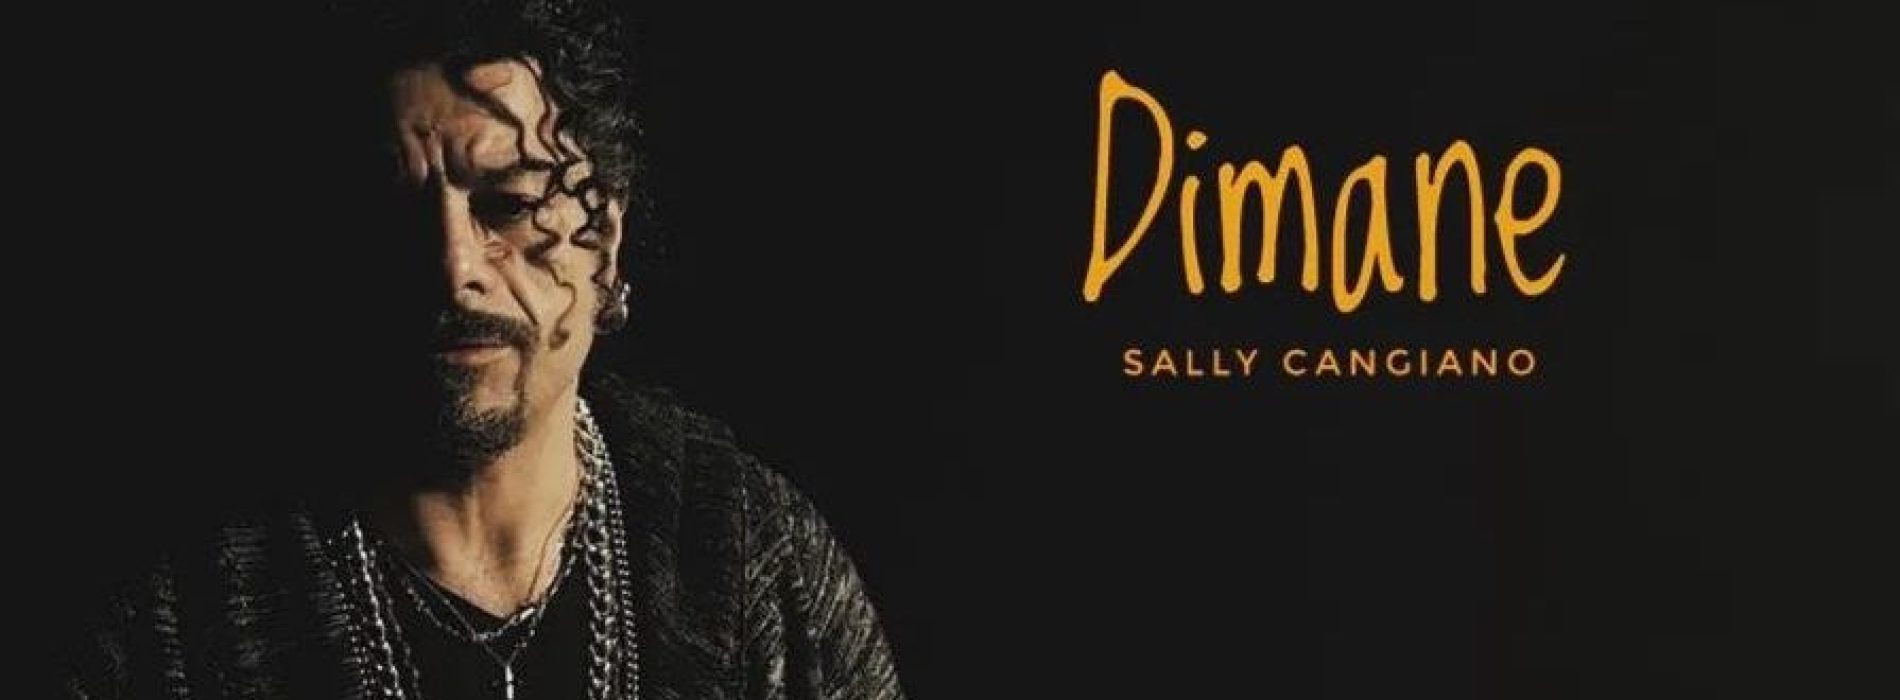 «Dimane», è su youtube l’ultimo singolo di Sally Cangiano